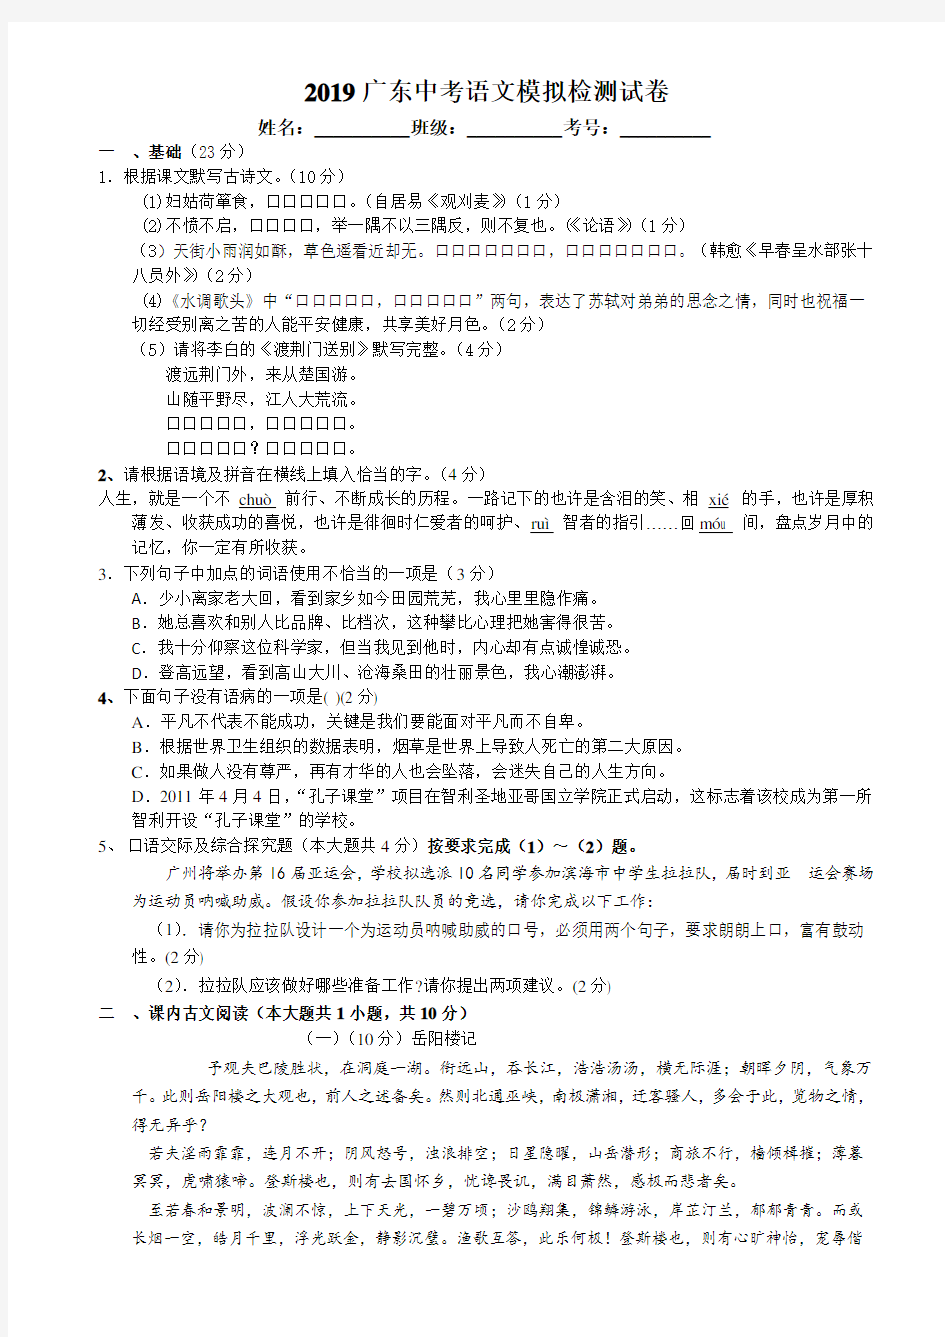 2019广东中考语文模拟检测试卷(带答题卡及答案)